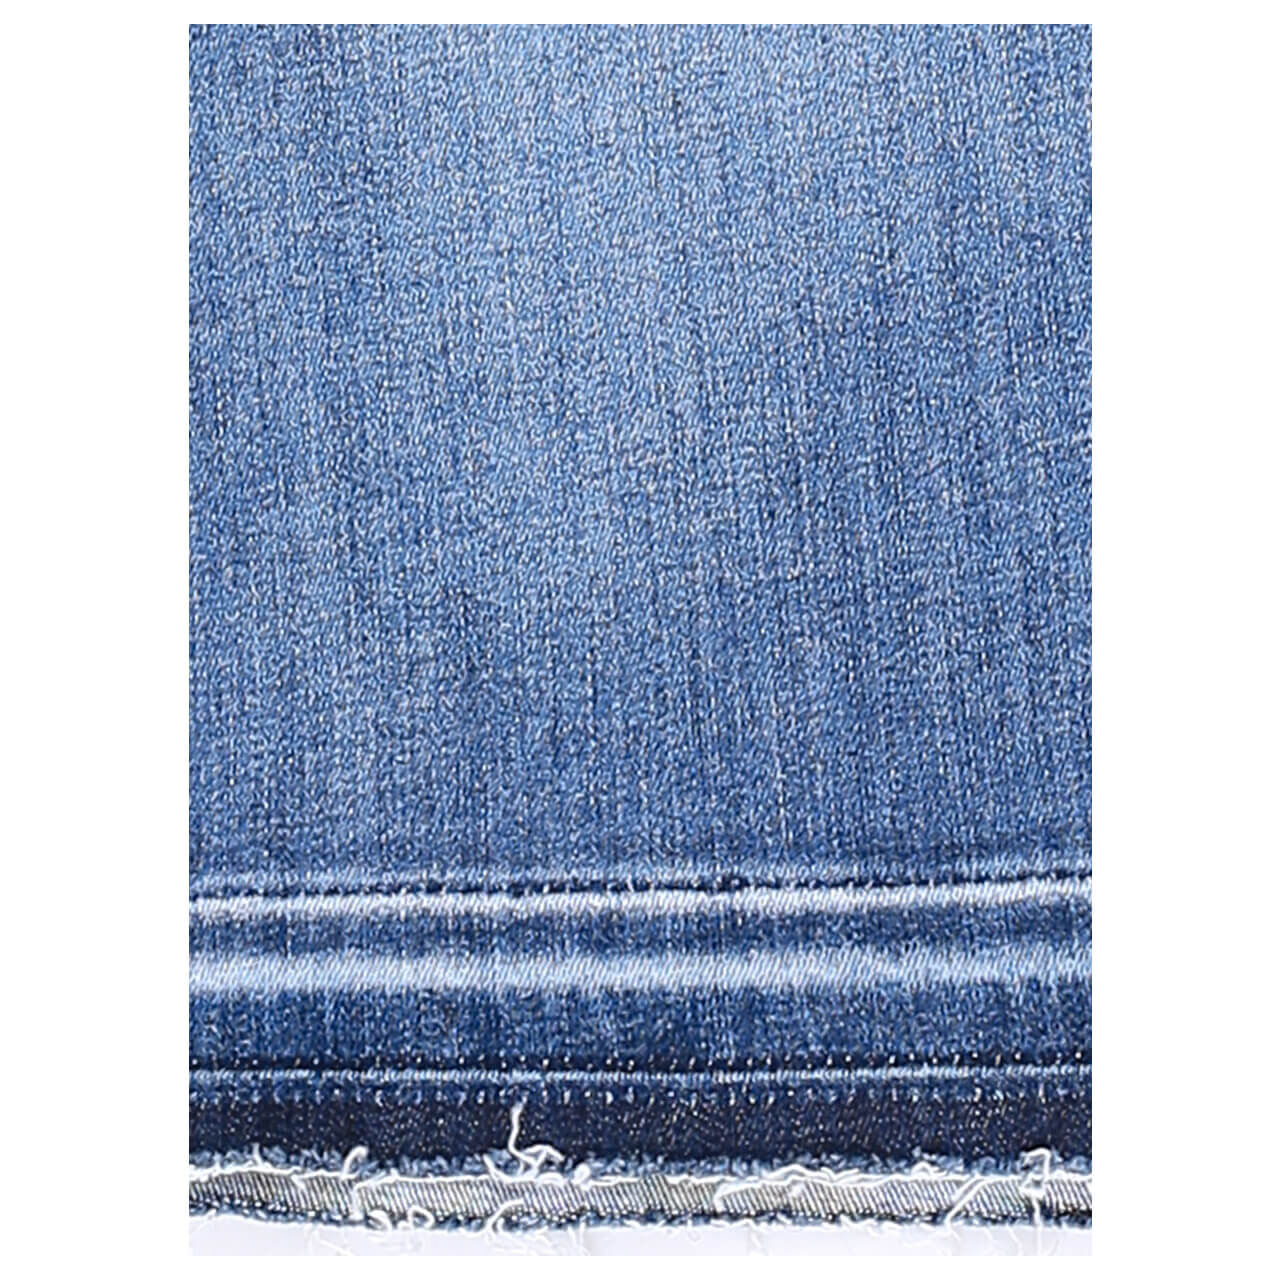 Buena Vista Leni-Skirt Stretch Denim Jeansrock für Damen in Blau angewaschen, FarbNr.: 4803